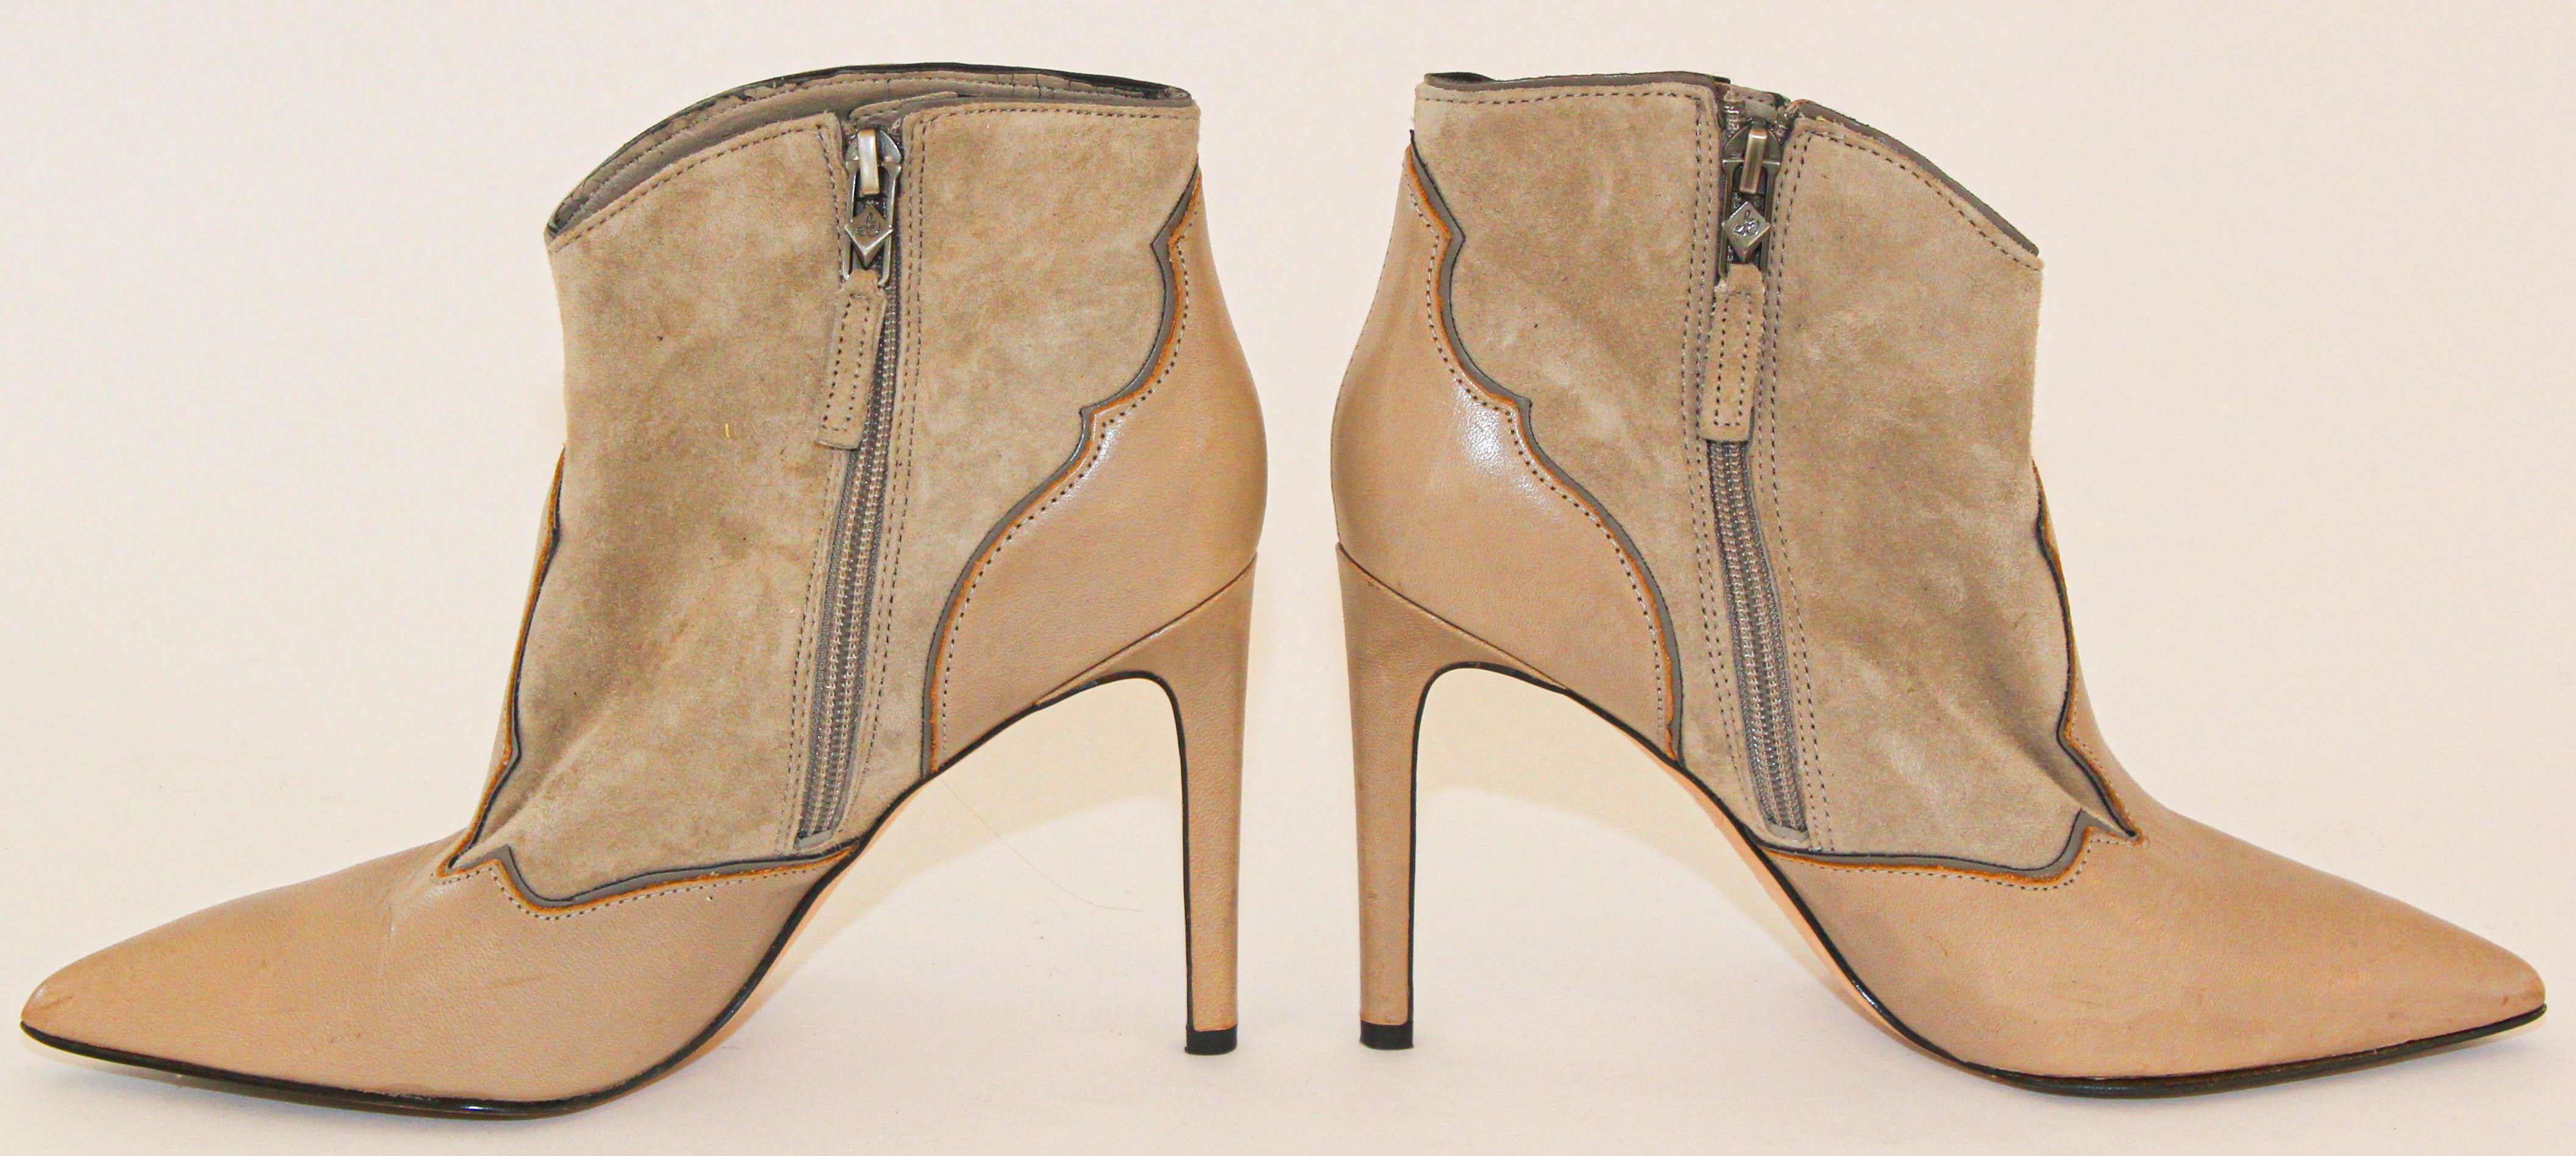 tan boots women's heels